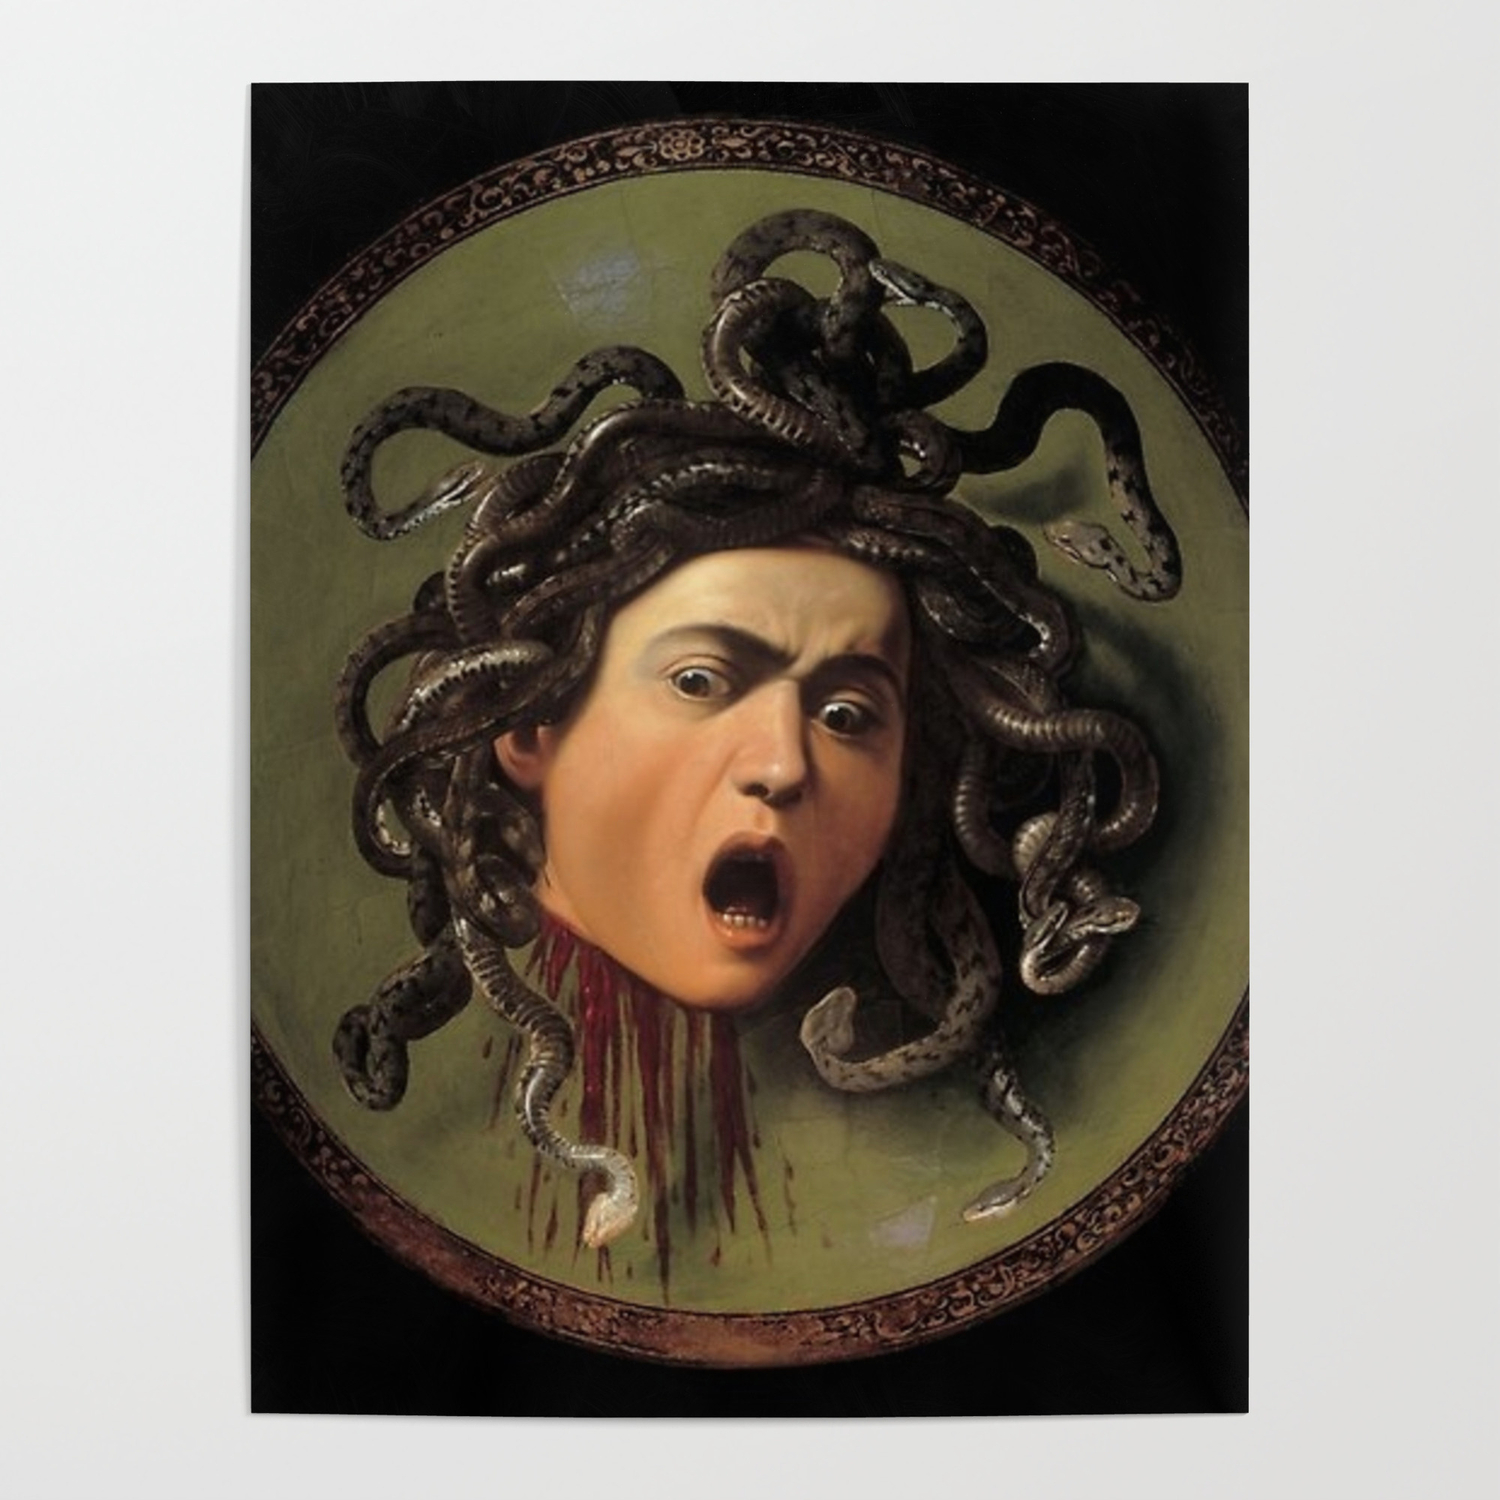 Nuovo Poster Artistico Caravaggio - Stampa Artistica Professionale Poster 13 x 13 cm: Medusa di Michelangelo Merisi 